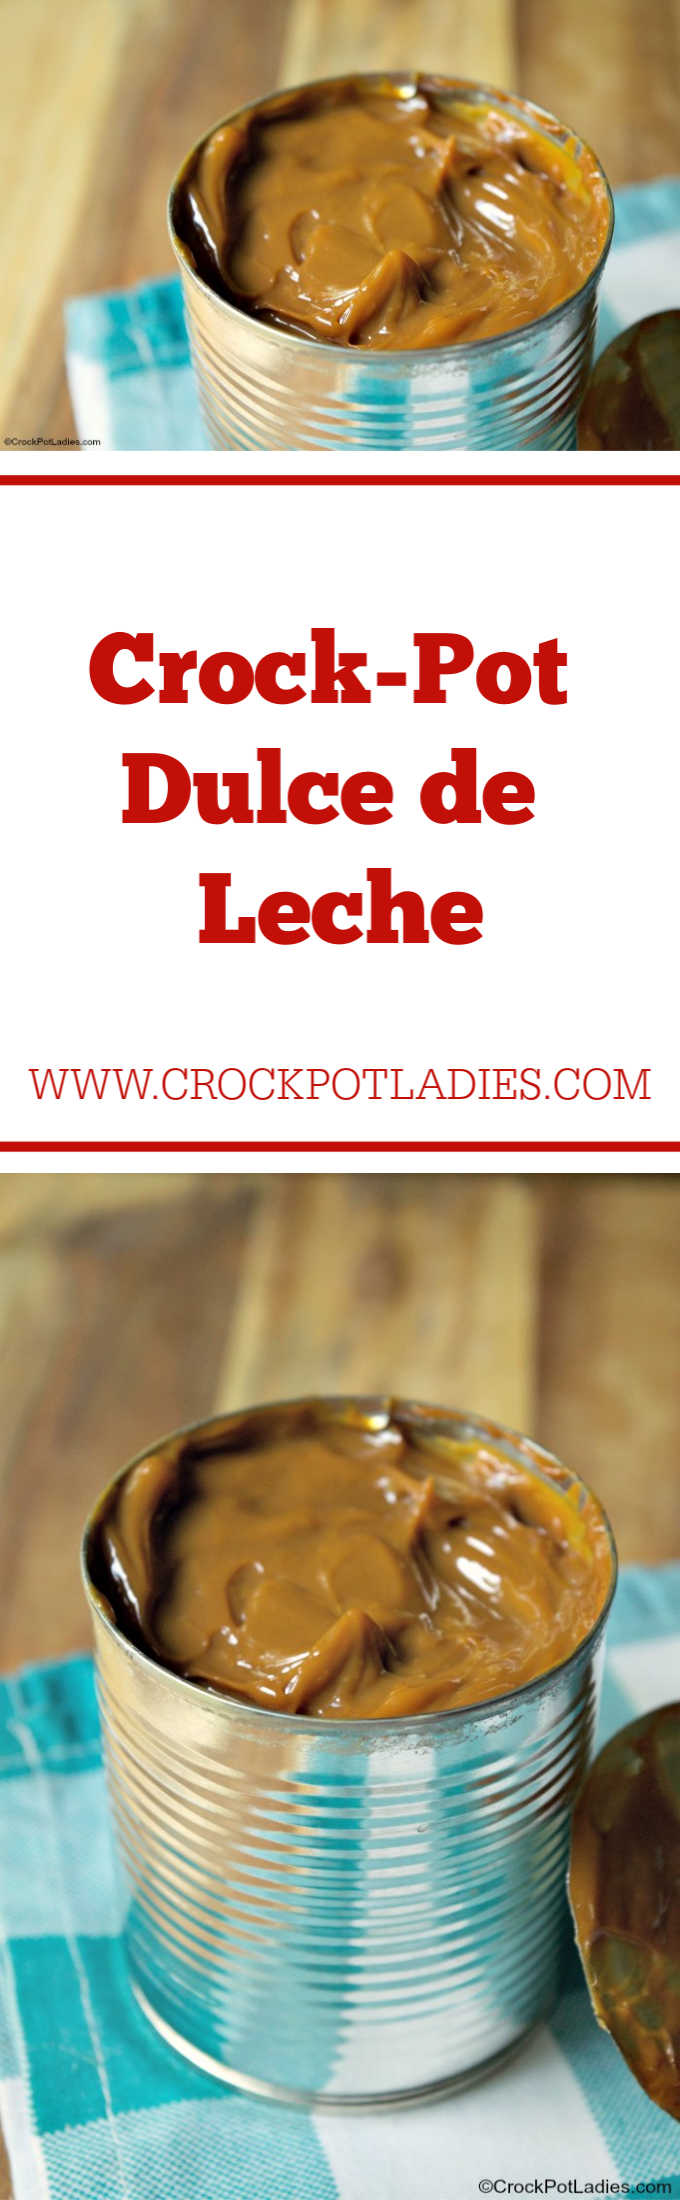 Crock-Pot Dulce de Leche